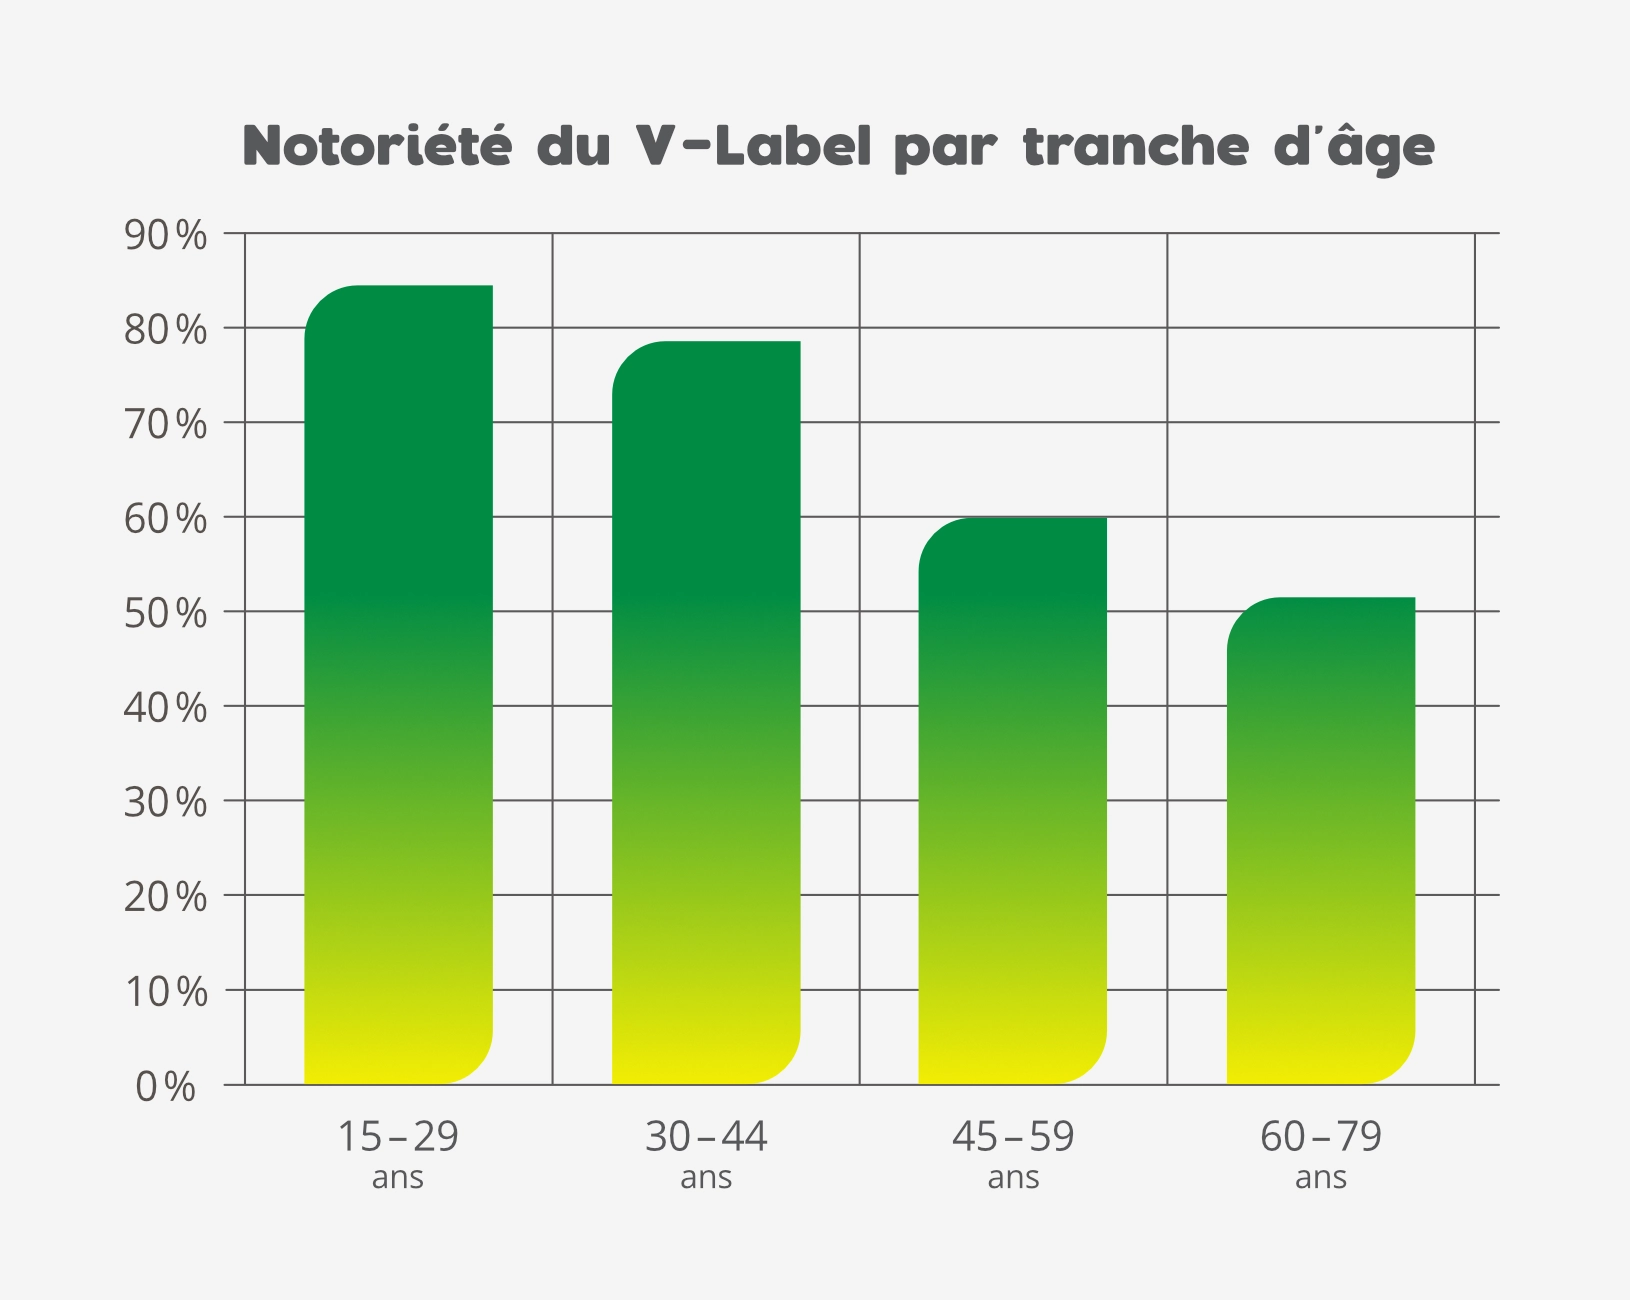 Notoriété du V-Label: résultats par tranche d'âge